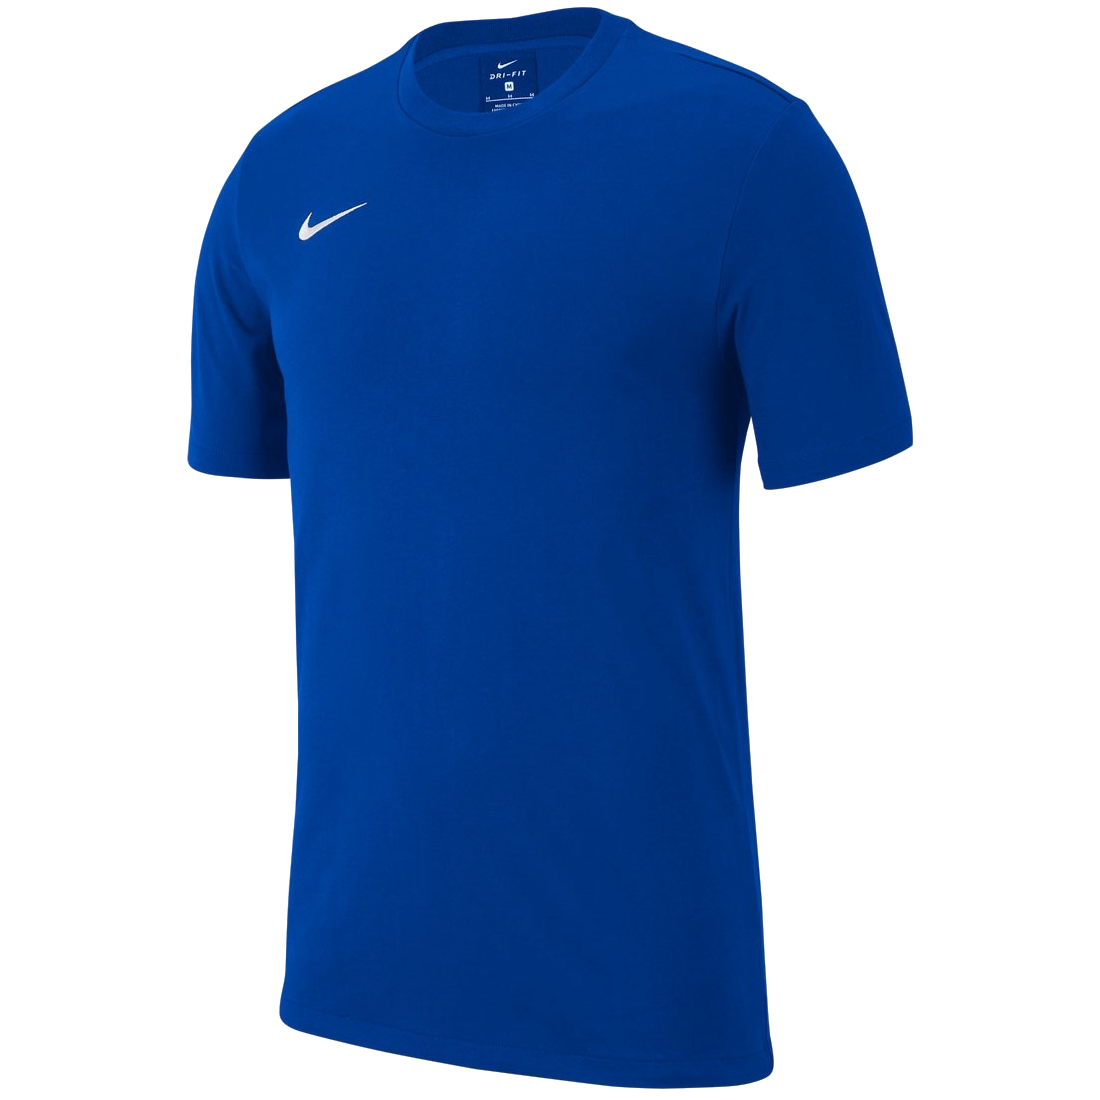 Nike Team Club 19 modrá/bílá UK Junior S Dětské